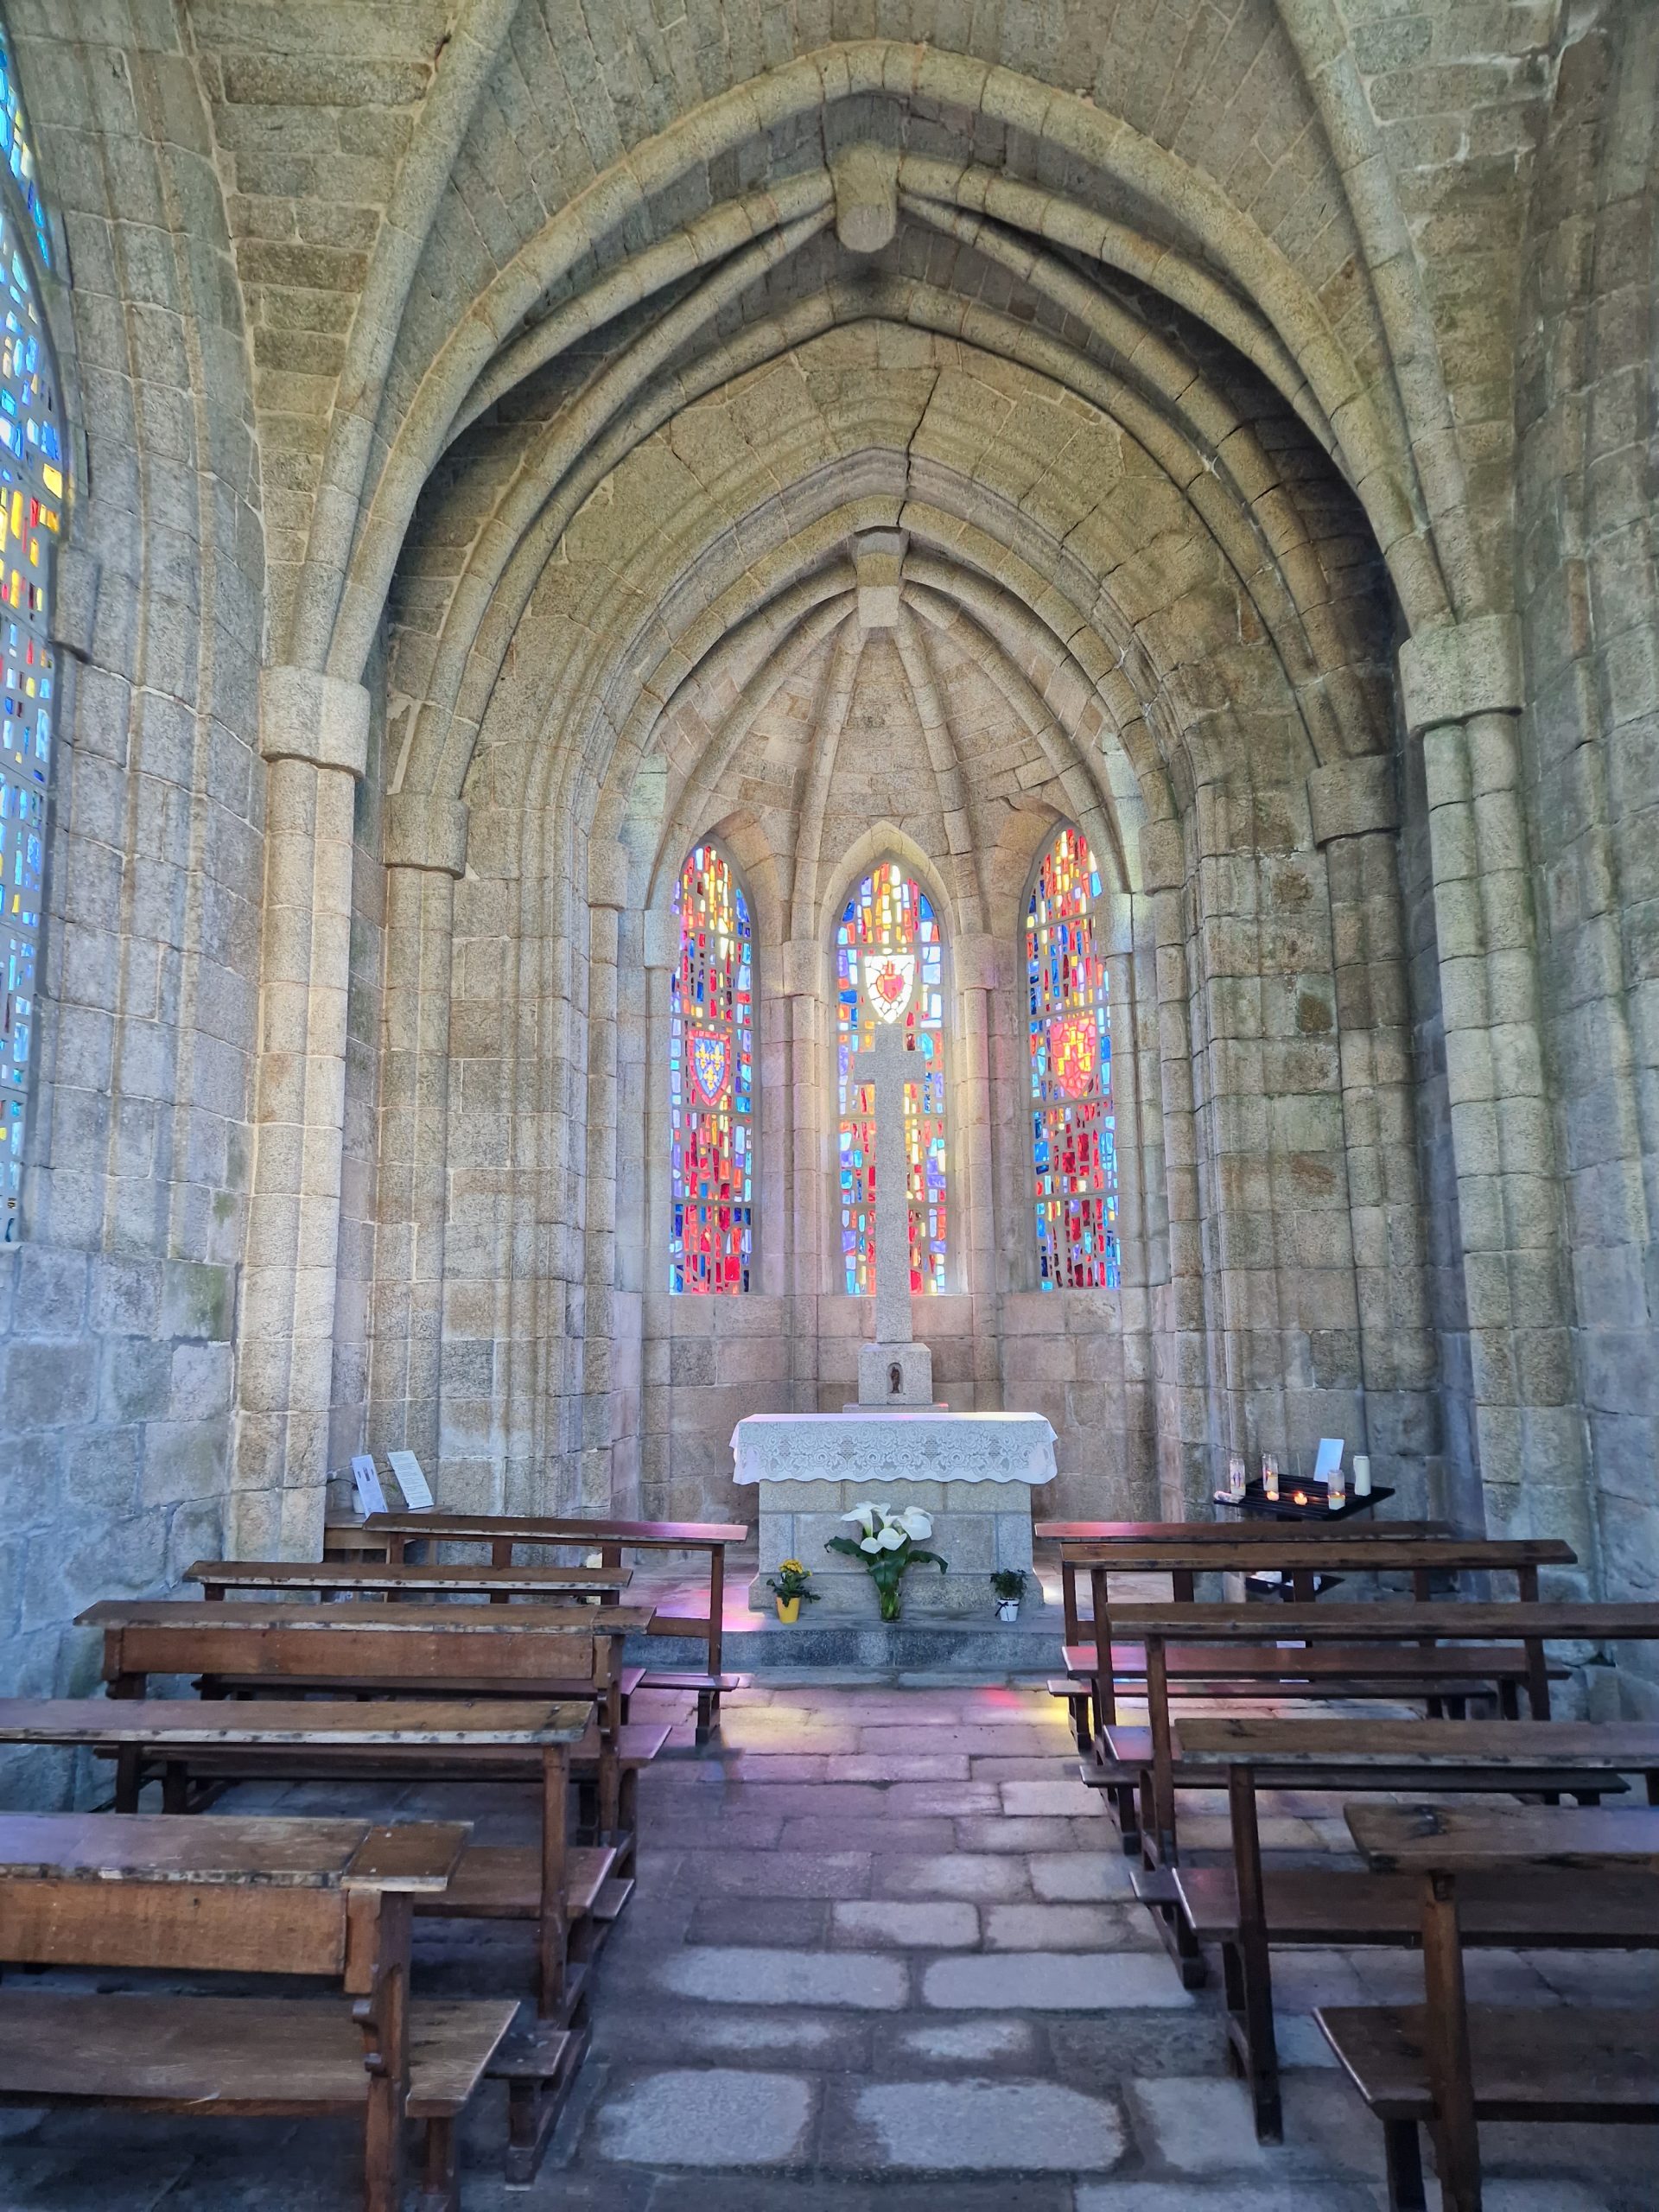 The chapel of Mont des Alouettes